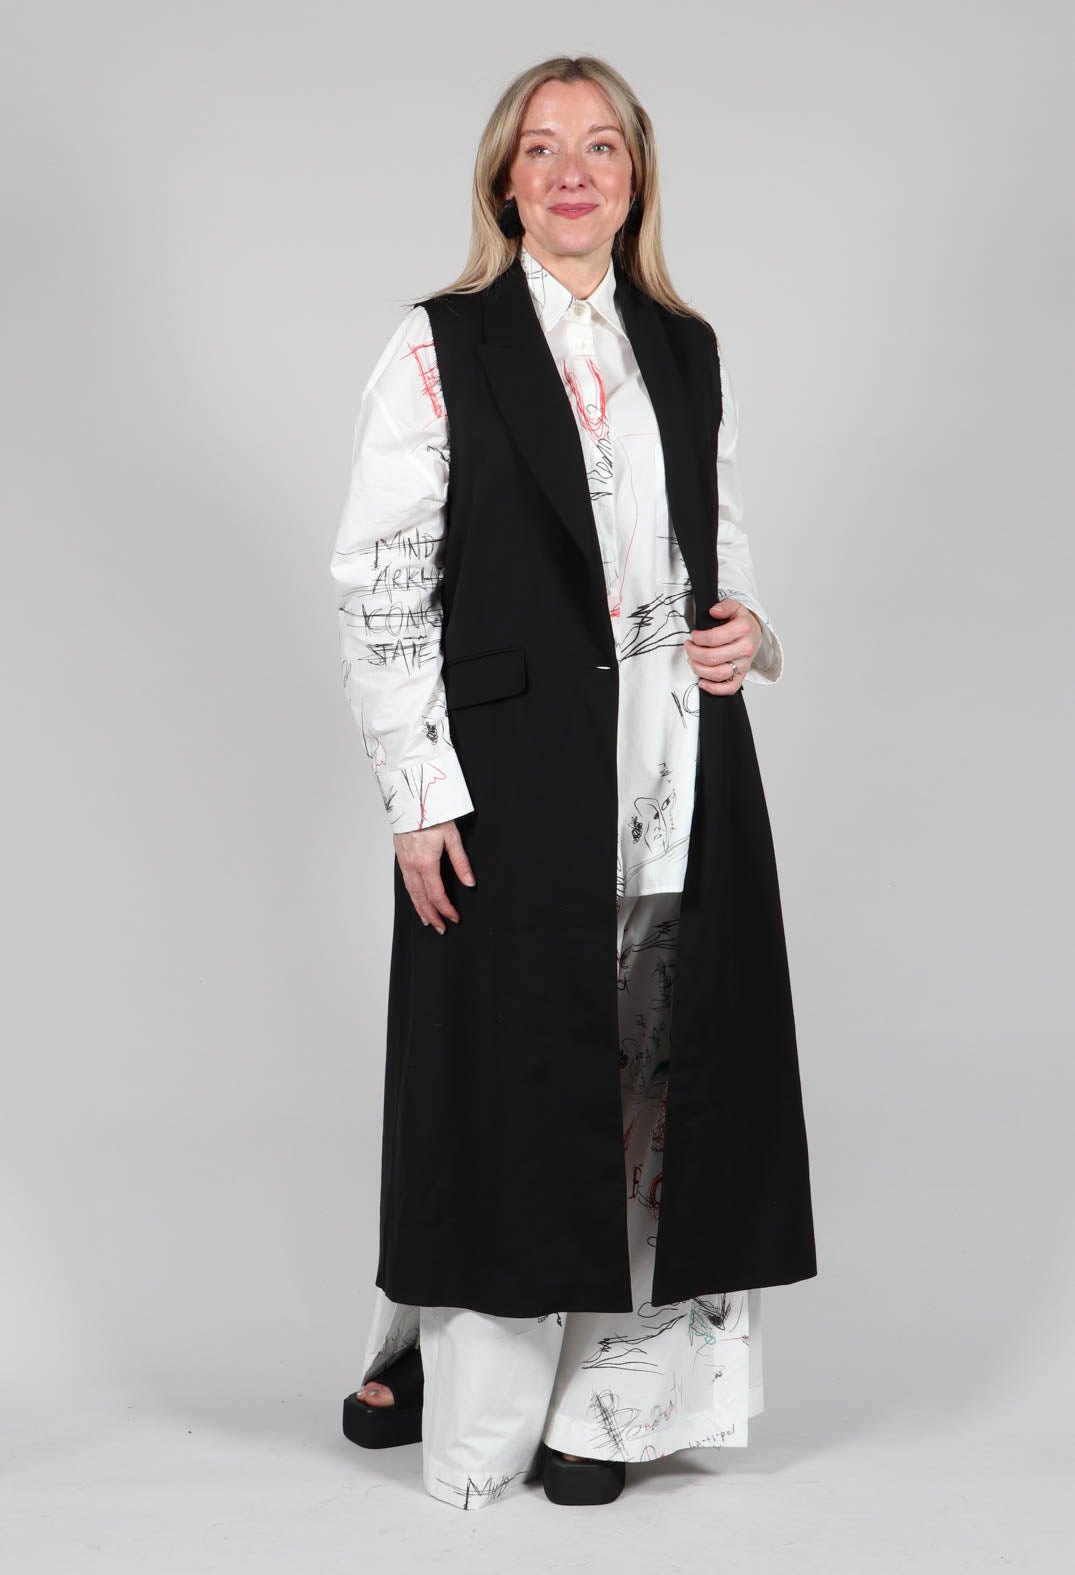 Longline Waistcoat in Black